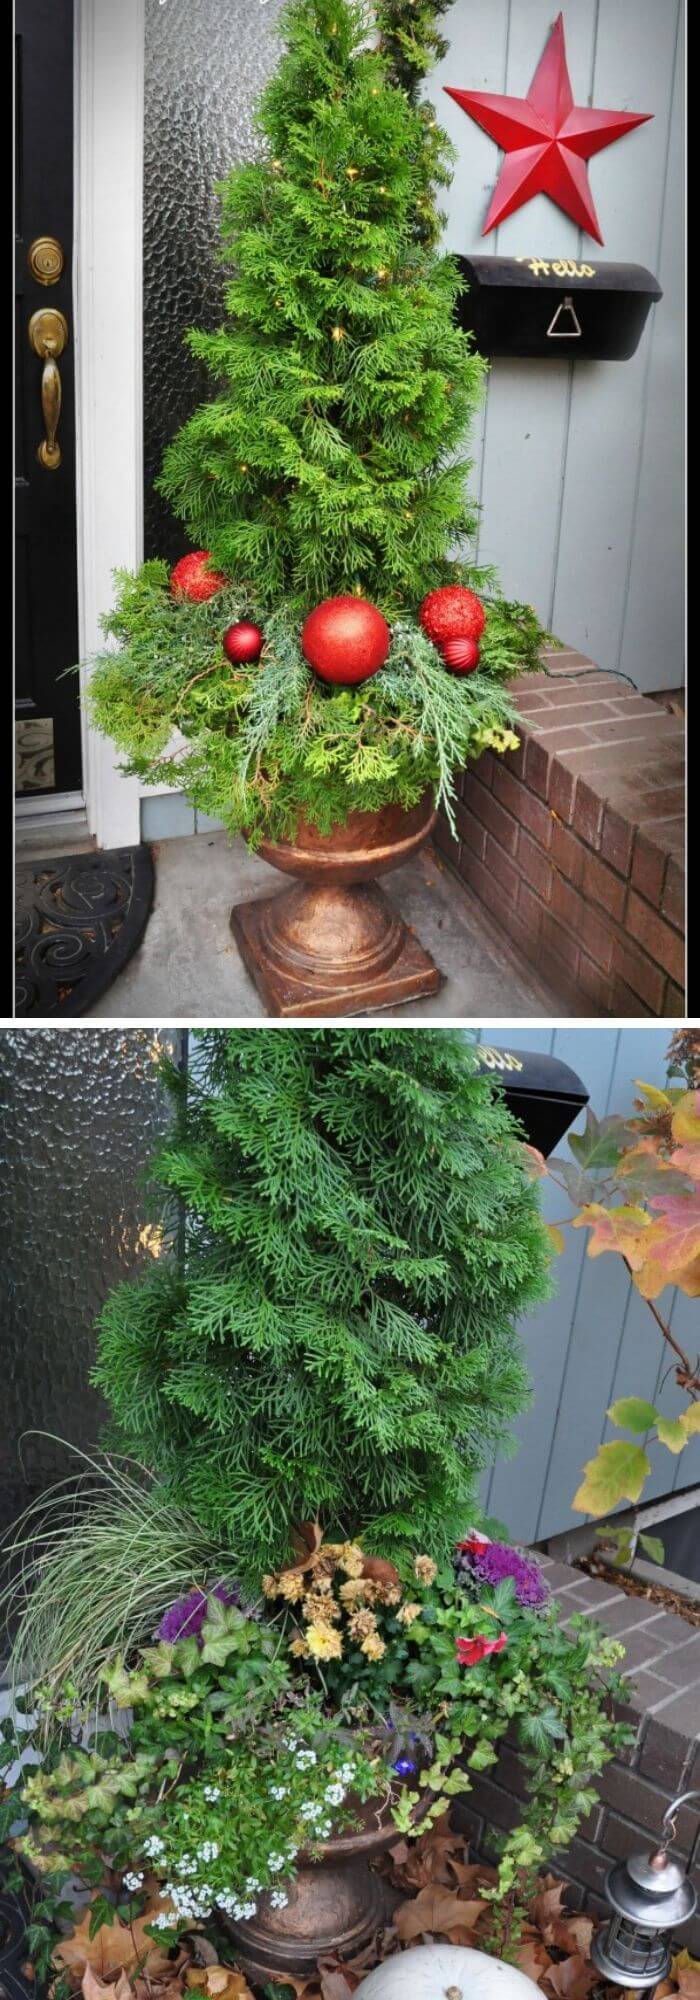 11 outdoor christmas planter ideas